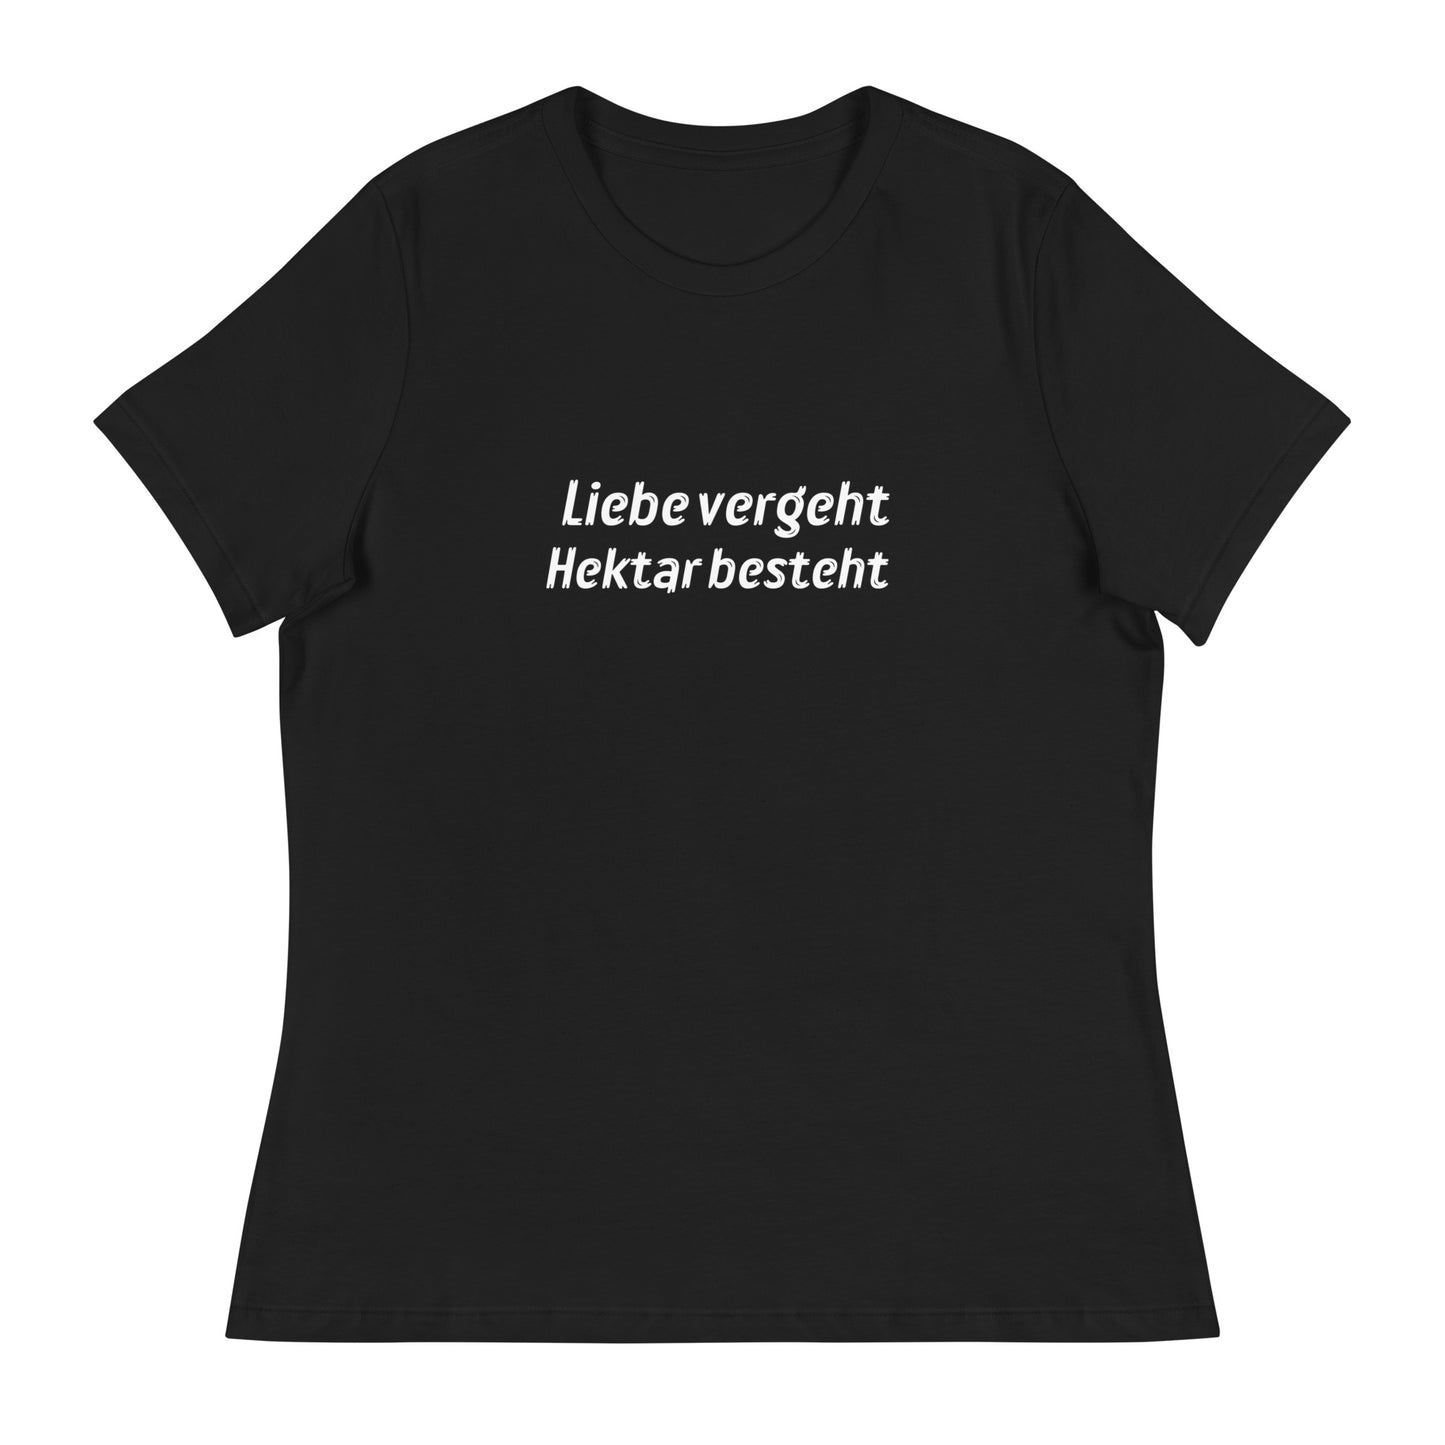 Liebe vergeht Hektar besteht - Frauen T-Shirt